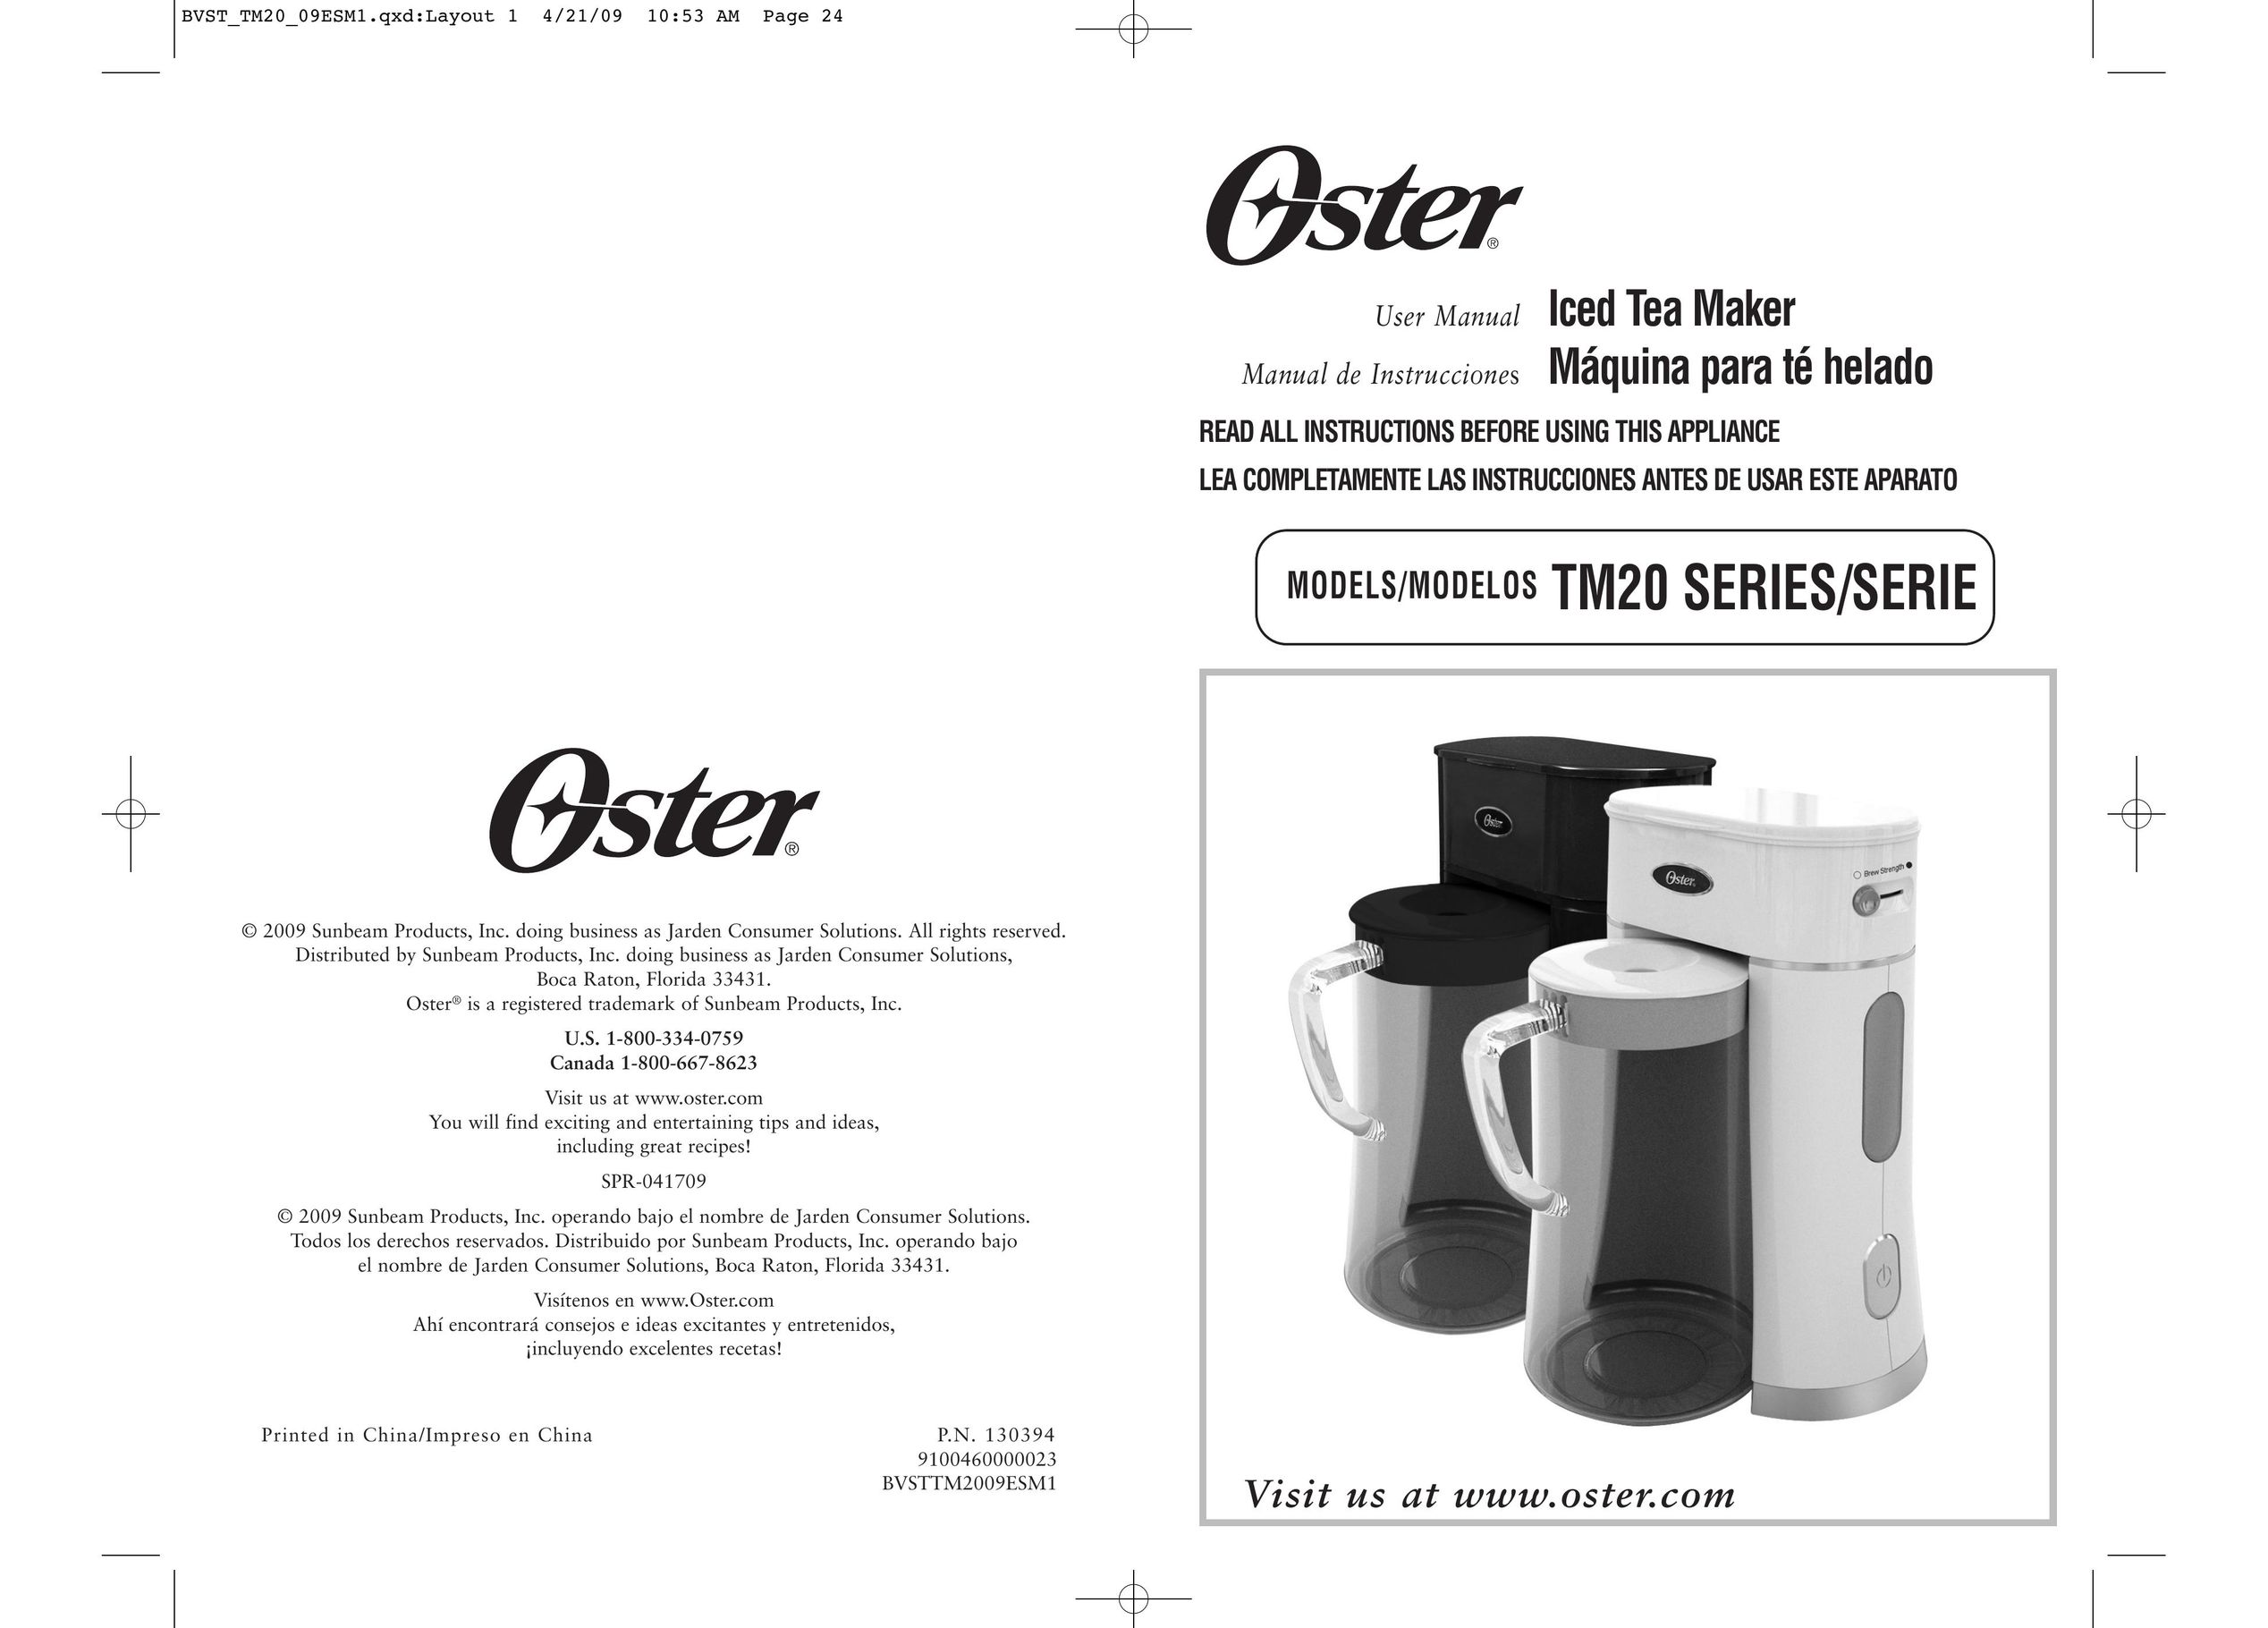 Oster BVST-TM20 Ice Tea Maker User Manual